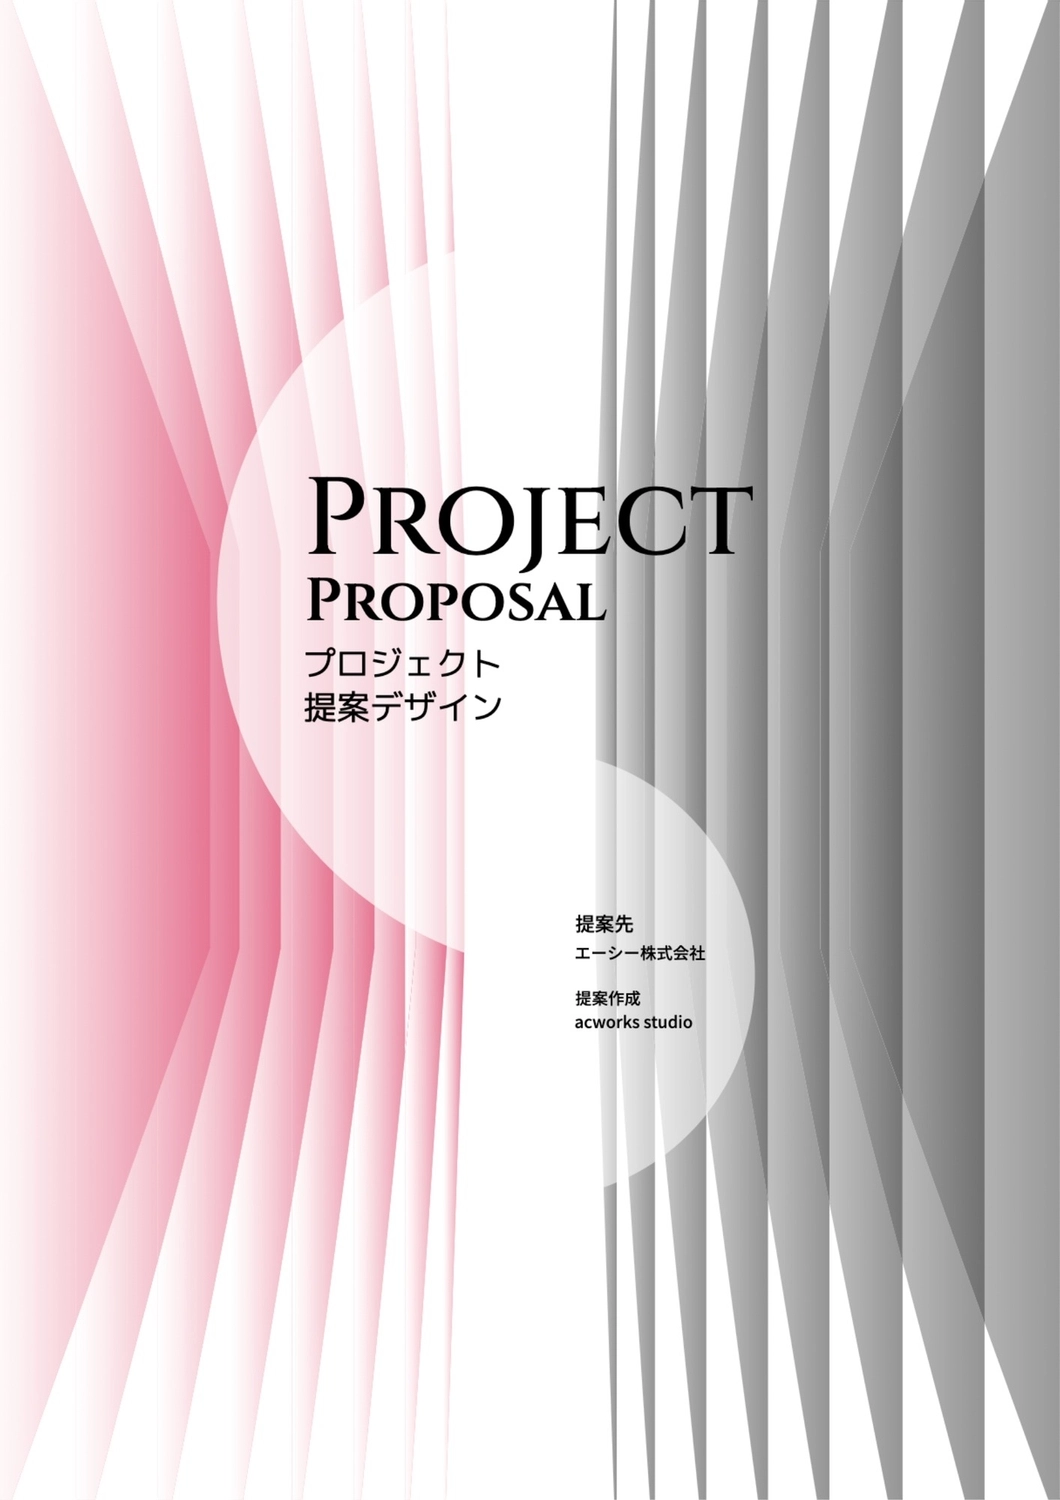 プロジェクト提案デザイン, ピンク, 作成, デザイン, A4文書テンプレート